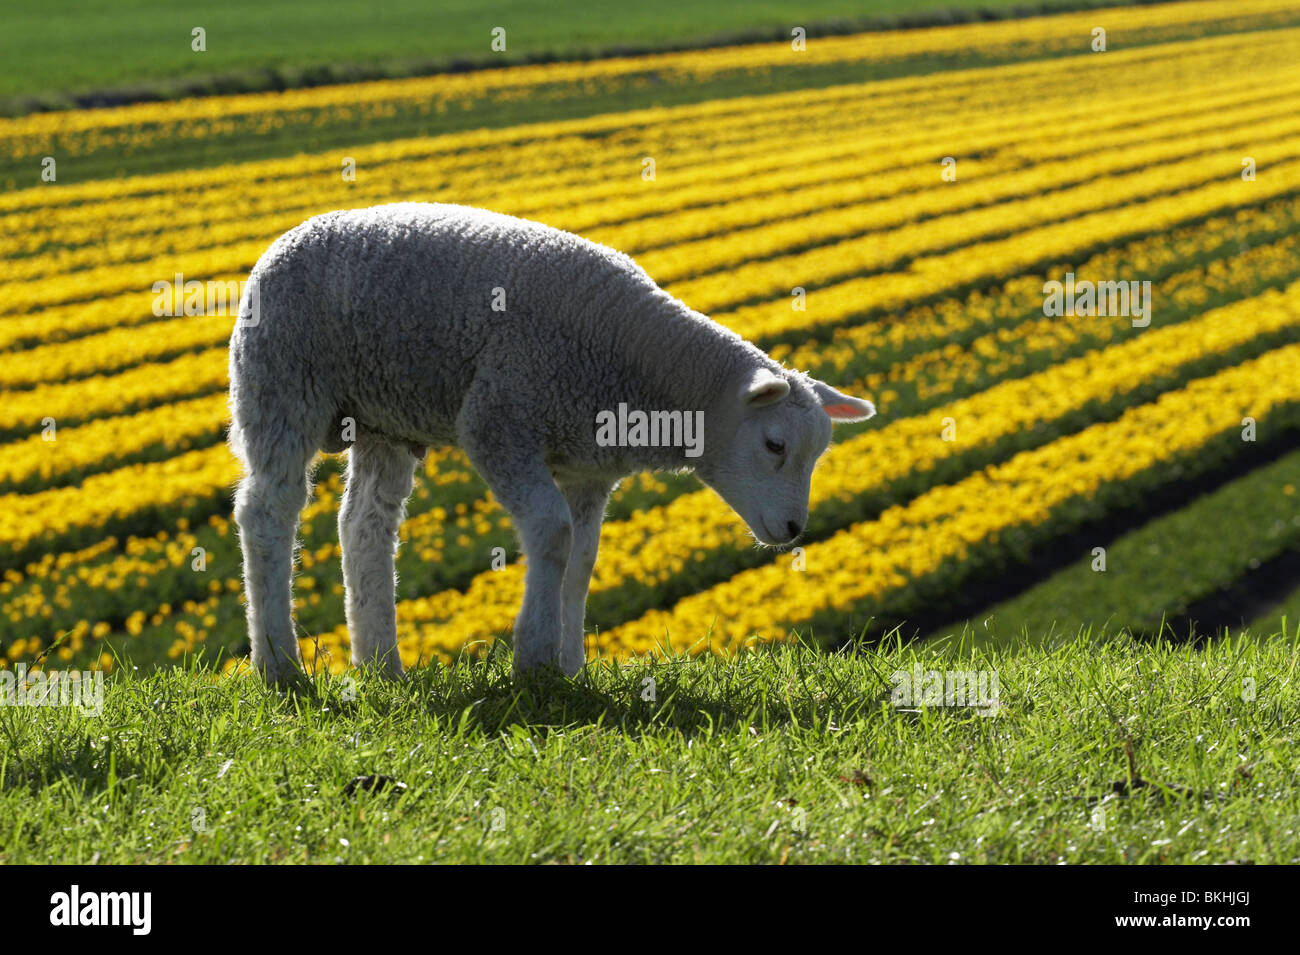 Lammetjes met tulpenveld; Lambs with tulip field Stock Photo